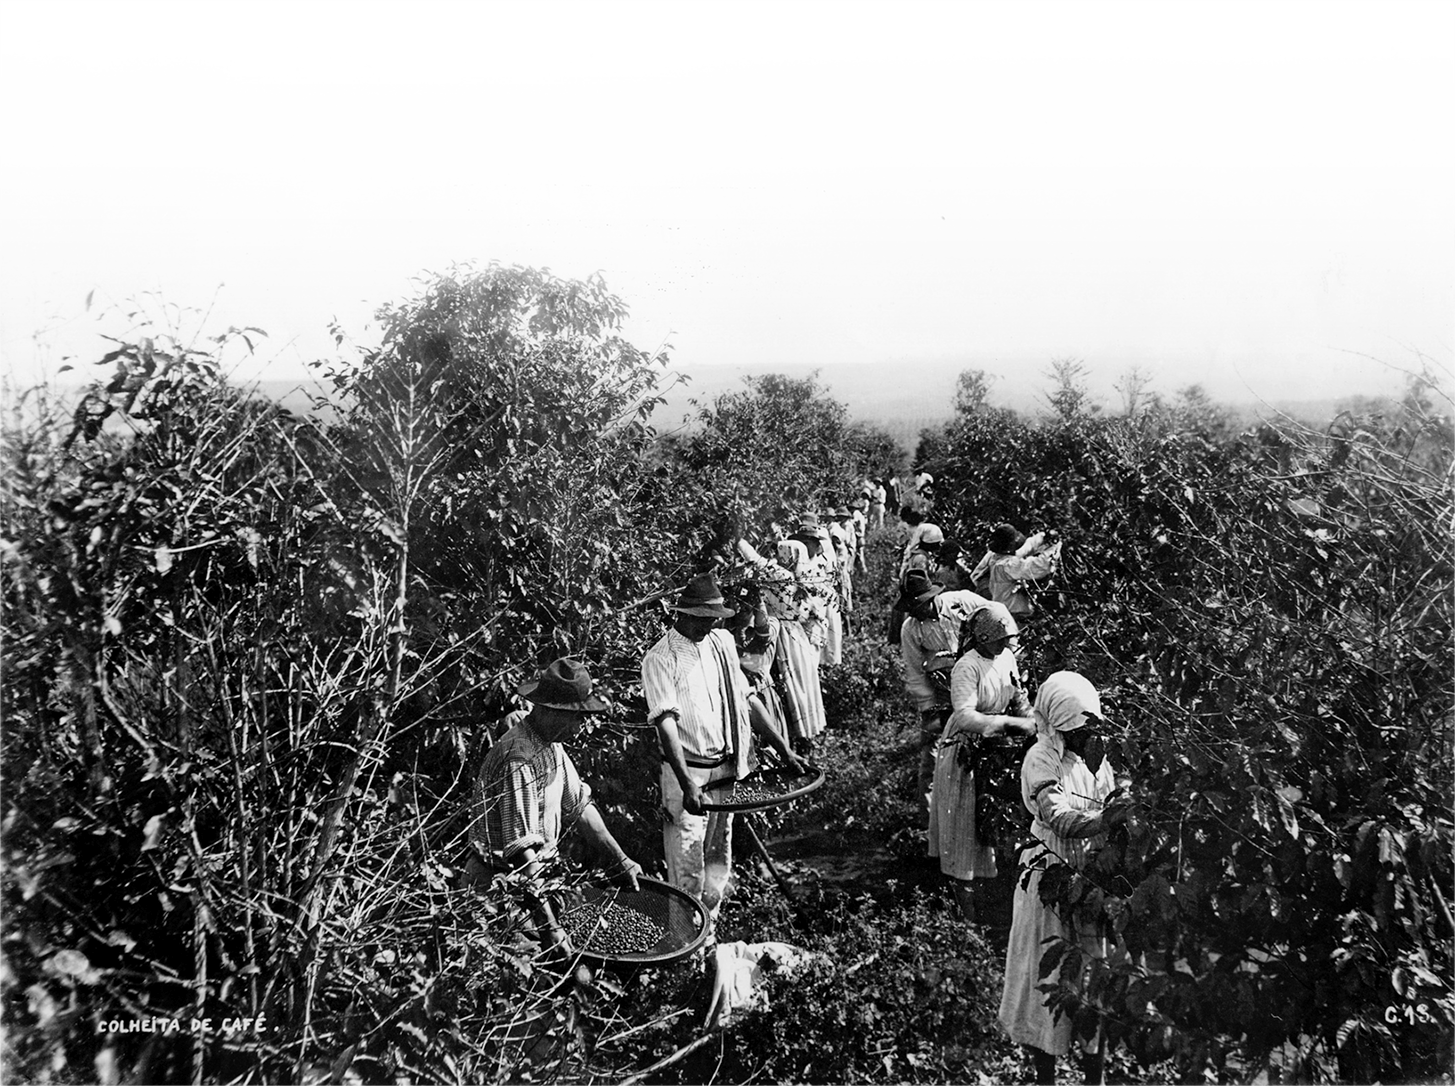 Fotografia em preto e branco. Homens e mulheres em meio a uma plantação de café. As mulheres recolhem os grãos e depositam em peneiras que os homens seguram.